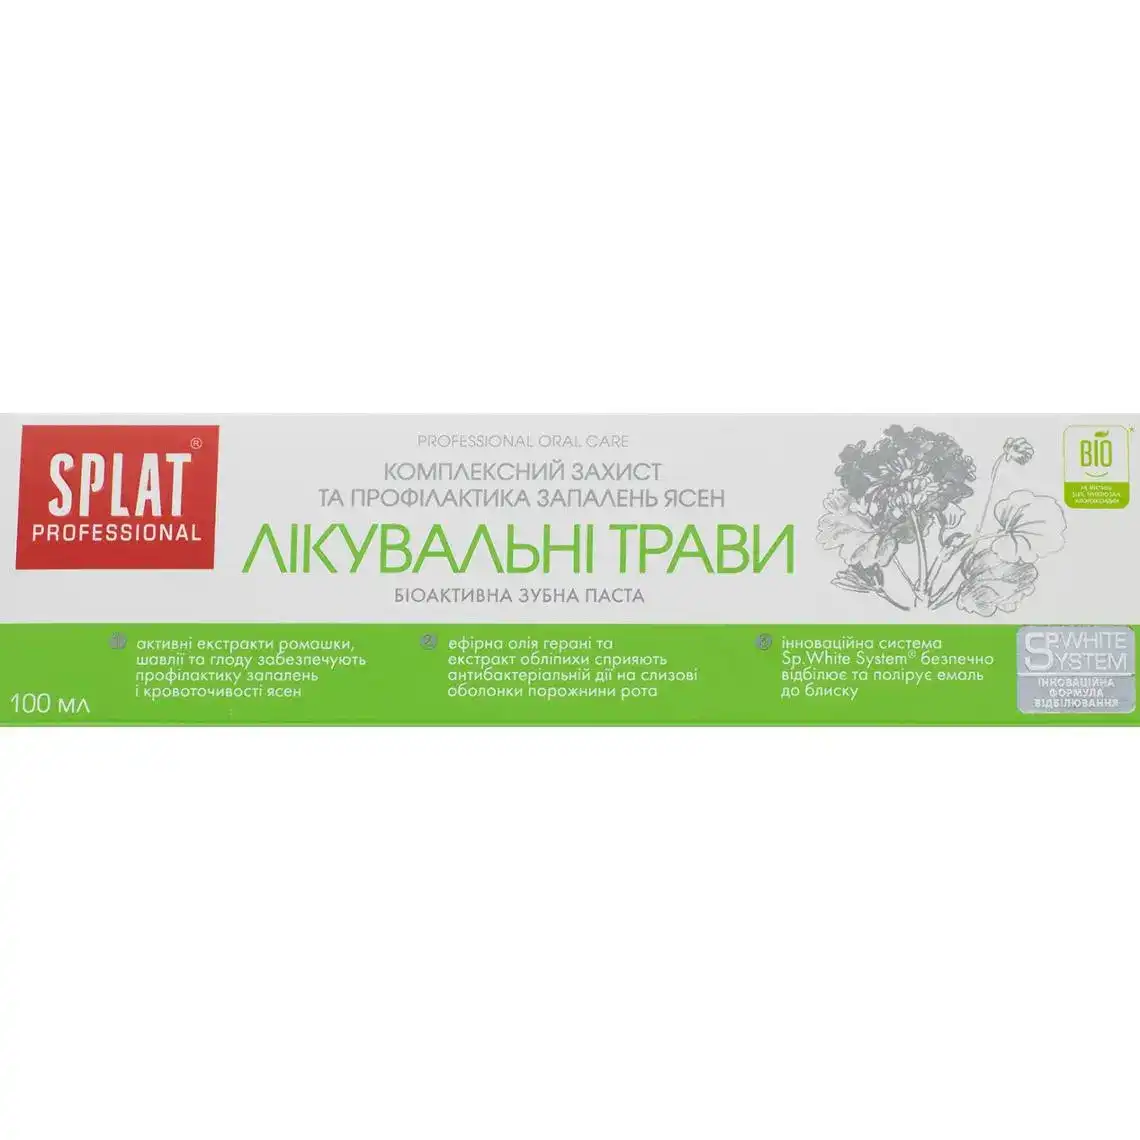 Фото 1 - Зубна паста Splat Professional Medical Herbs 100 мл